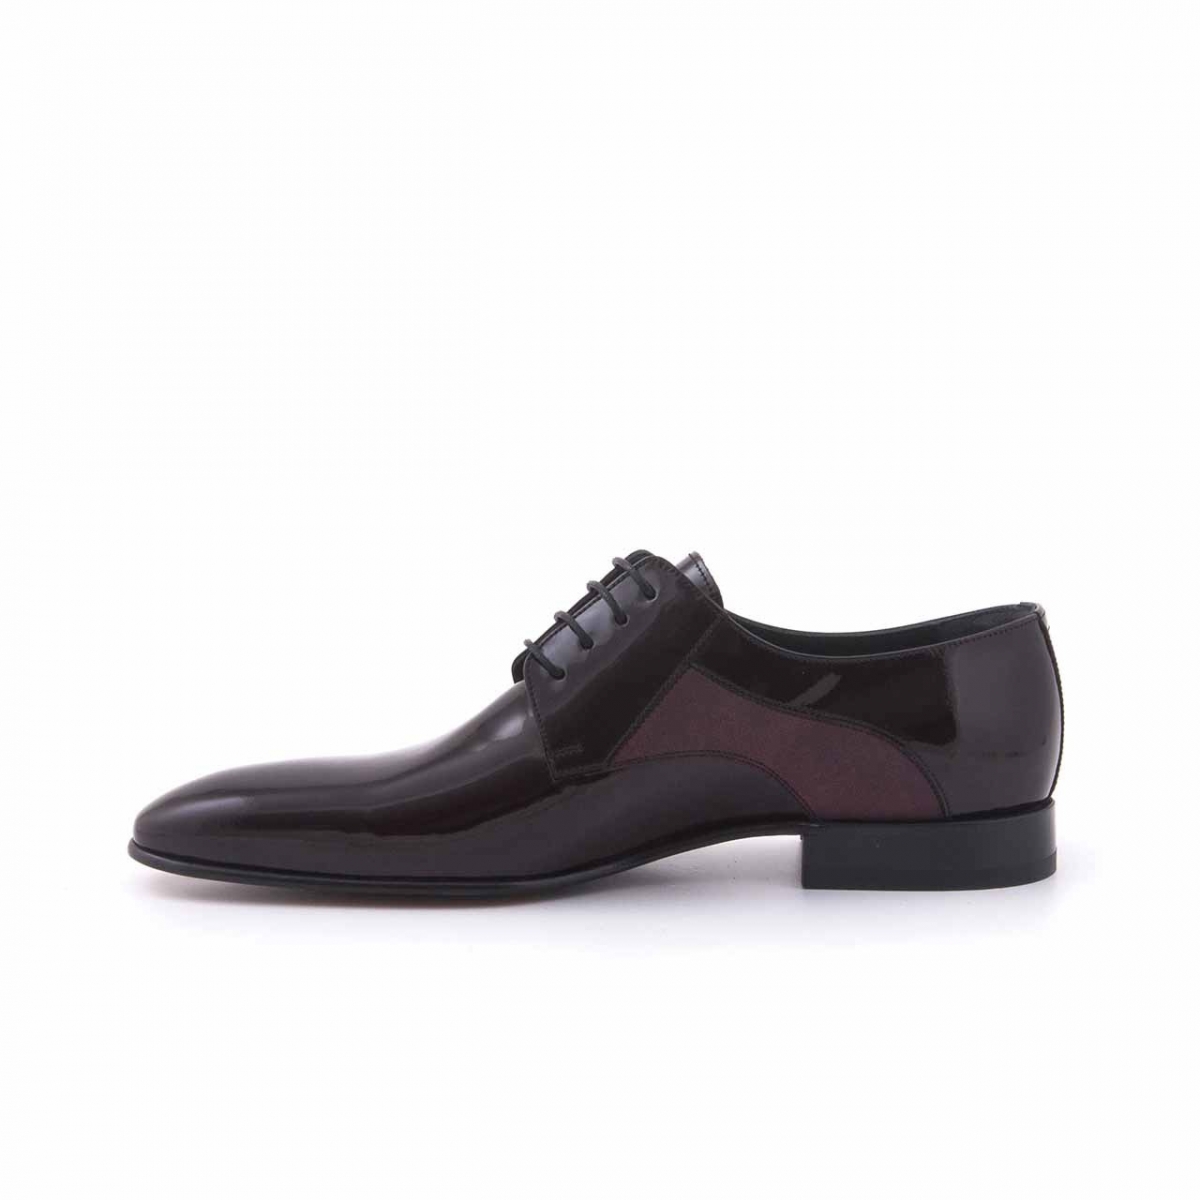 Flo Deri Bağcıklı Erkek Klasik Ayakkabı 4126. 2